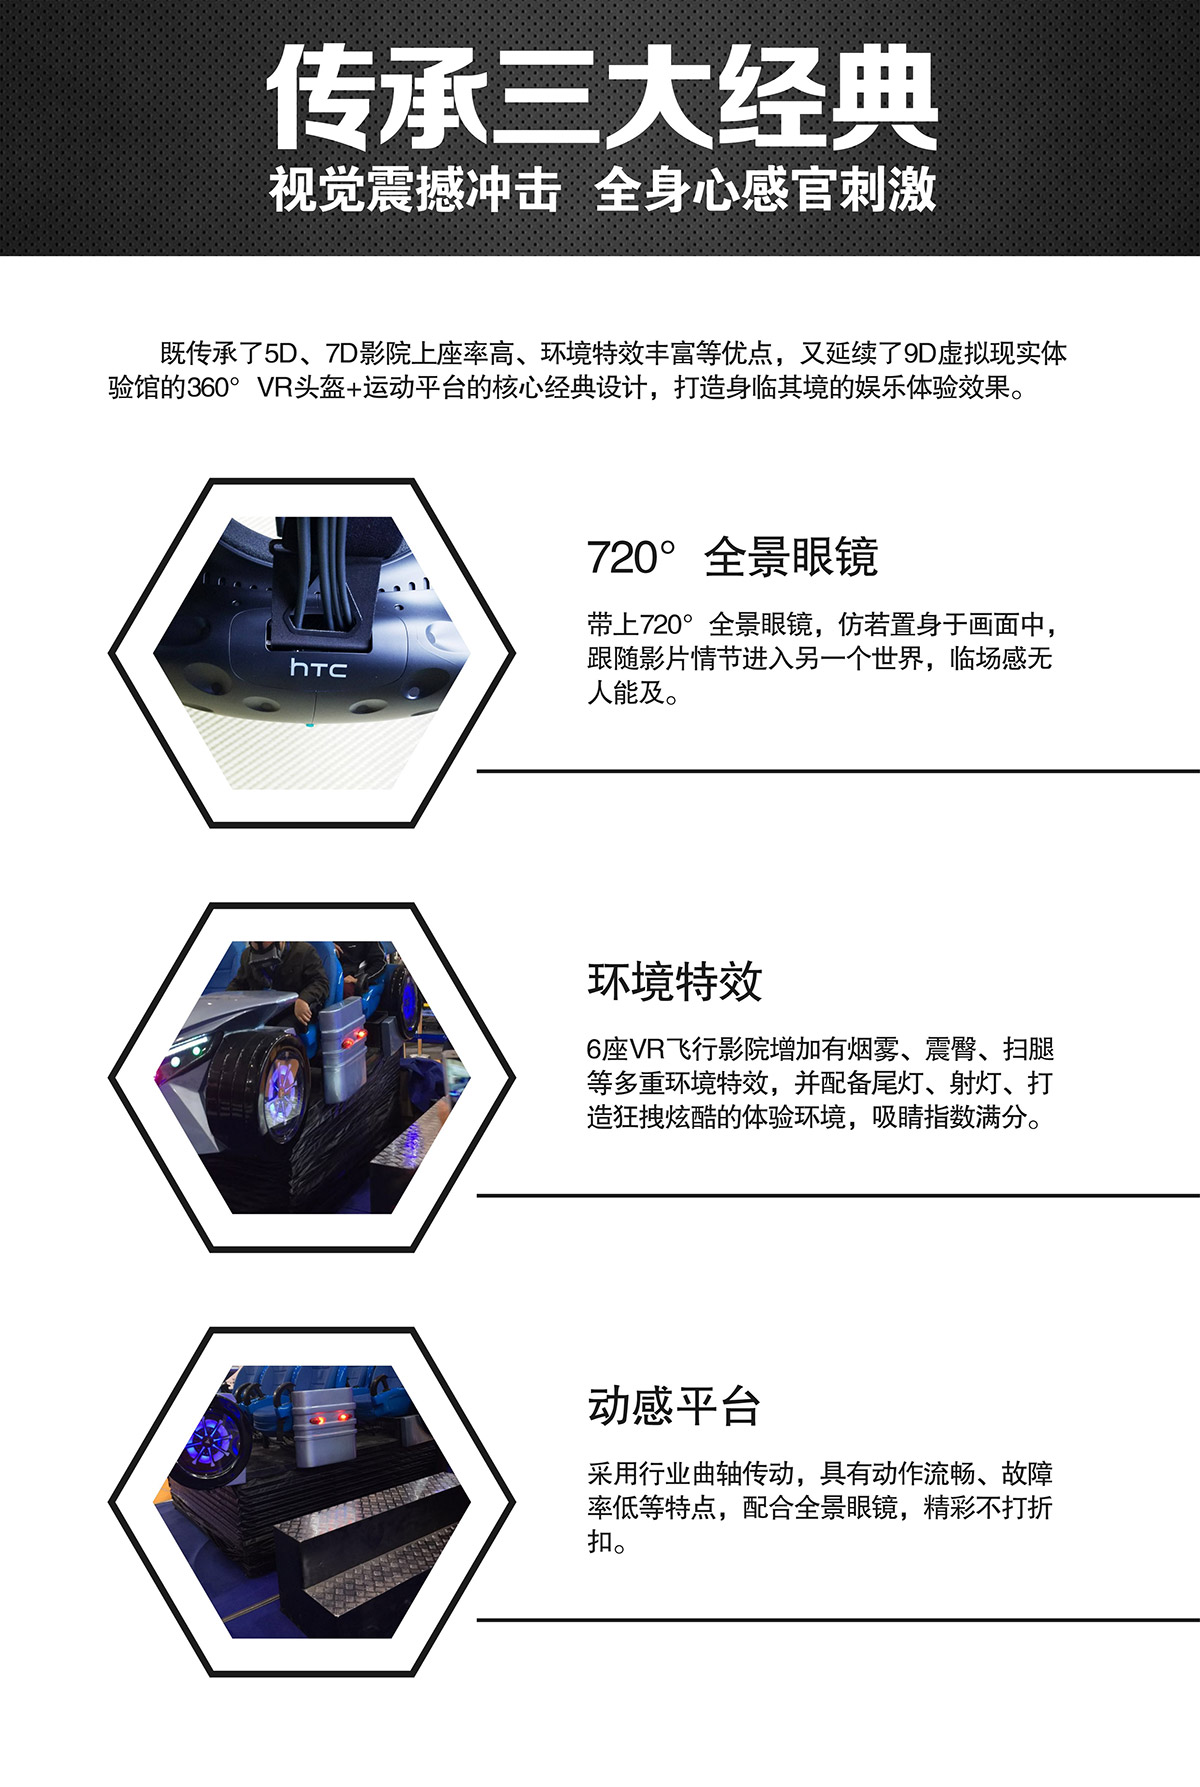 校园安全VR虚拟飞行体验馆视觉震撼冲击.jpg